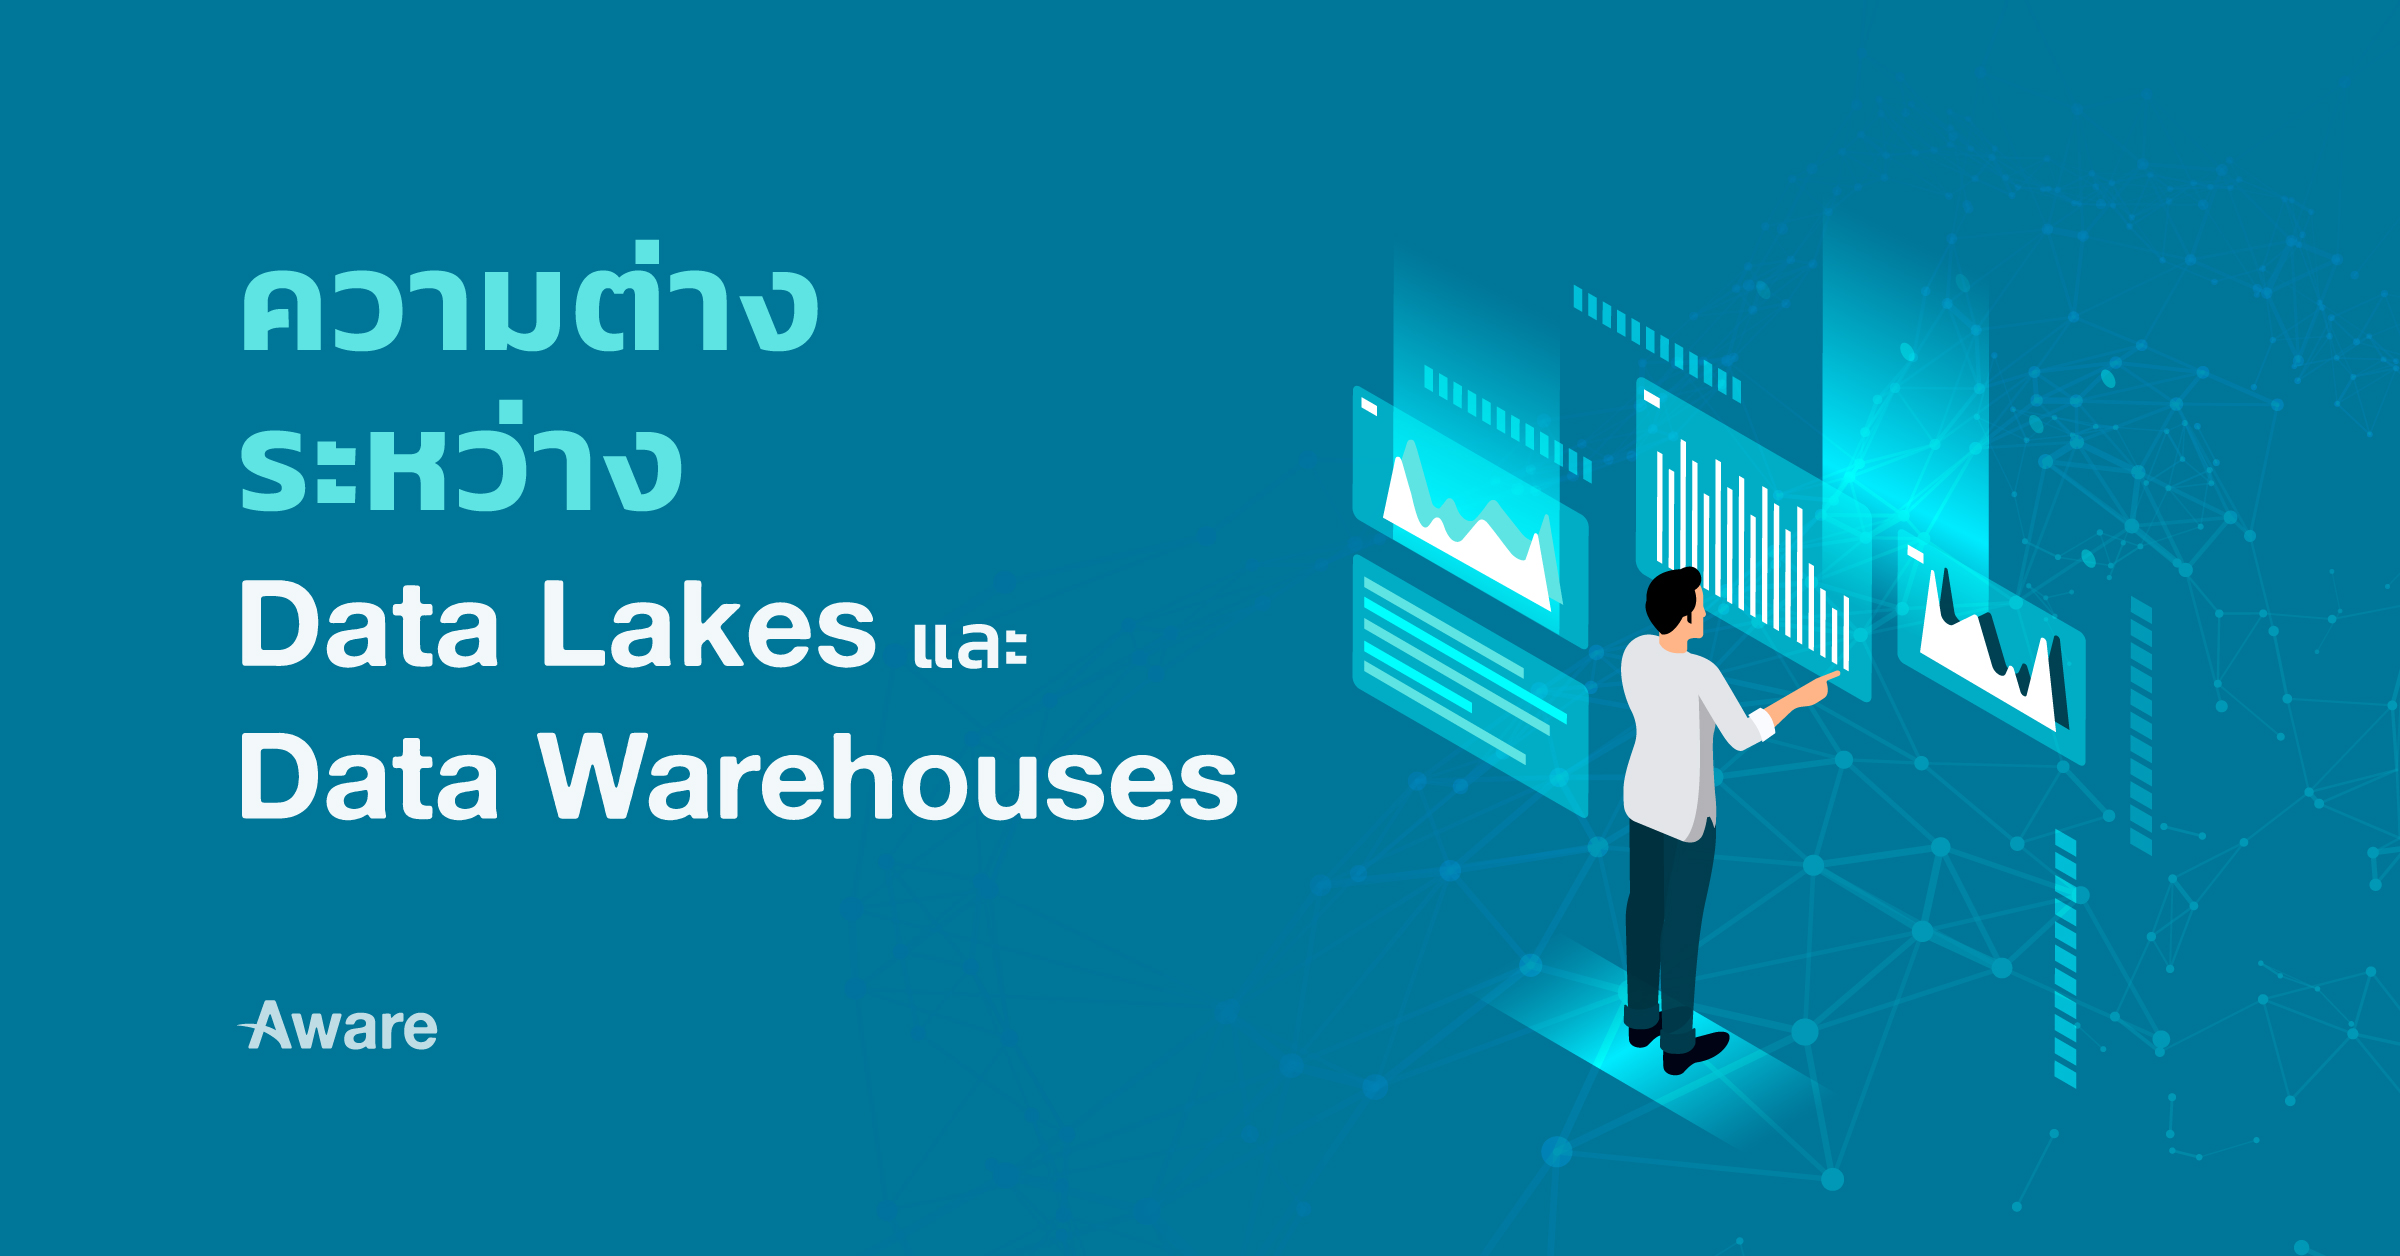 ความต่างระหว่าง Data lakes และ Data warehouses 